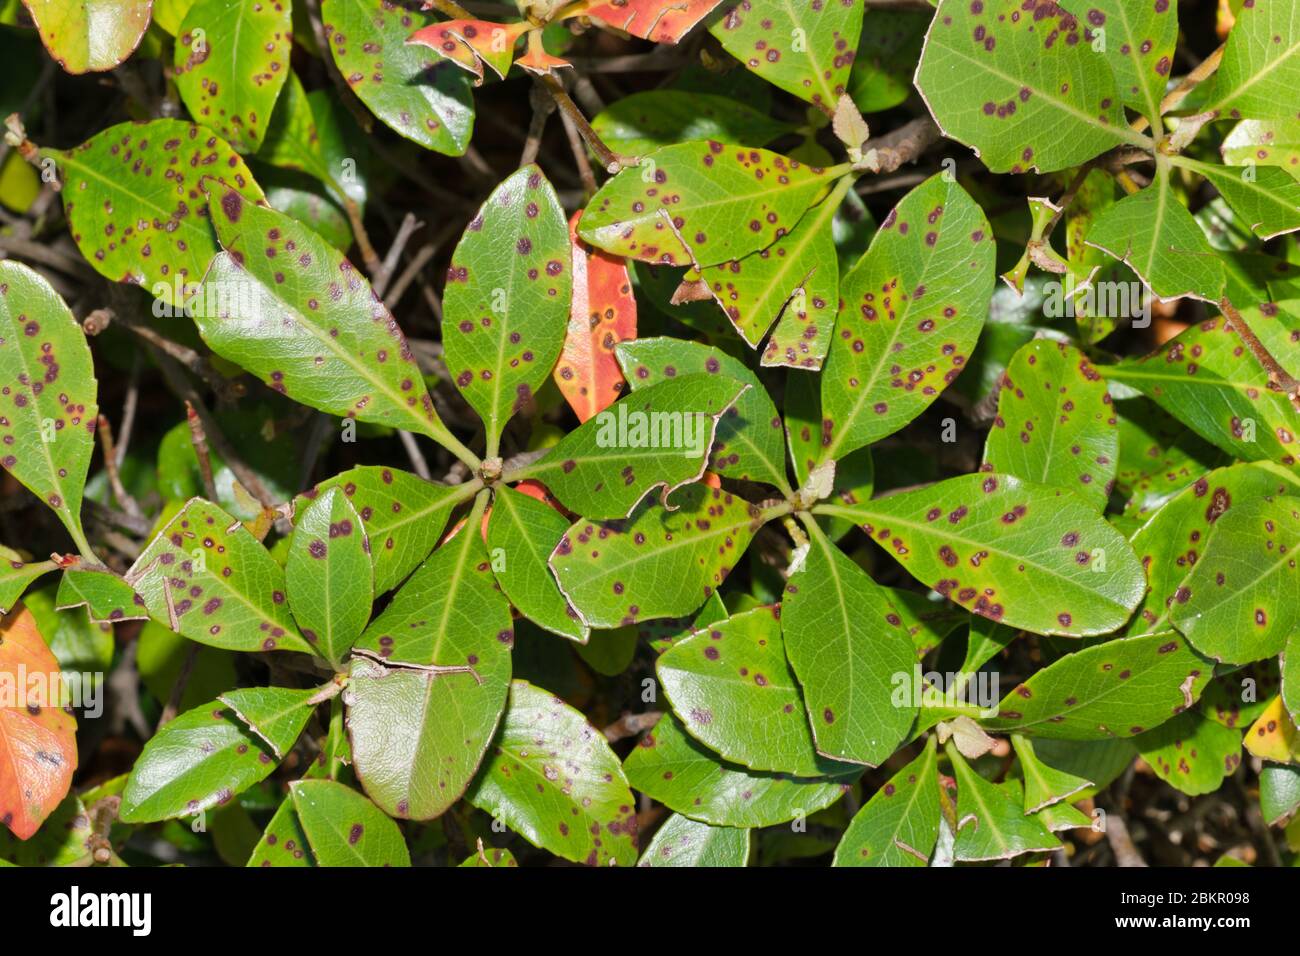 Malattia della macchia della foglia sulle foglie della pianta di Hawthorn indiane. Condizione causata da funghi parassiti o batteri. Trattabile nella maggior parte dei casi. Immagine a fotogramma intero ravvicinata. Foto Stock